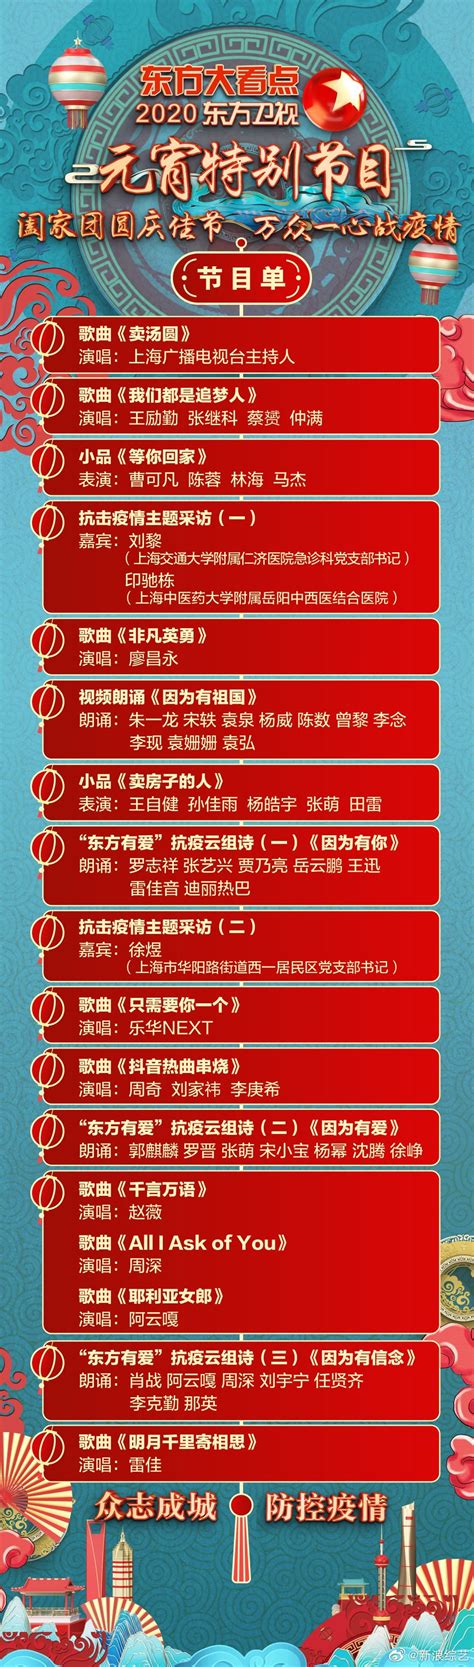 春节喜庆联欢晚会节目单PSD设计图片下载_红动中国